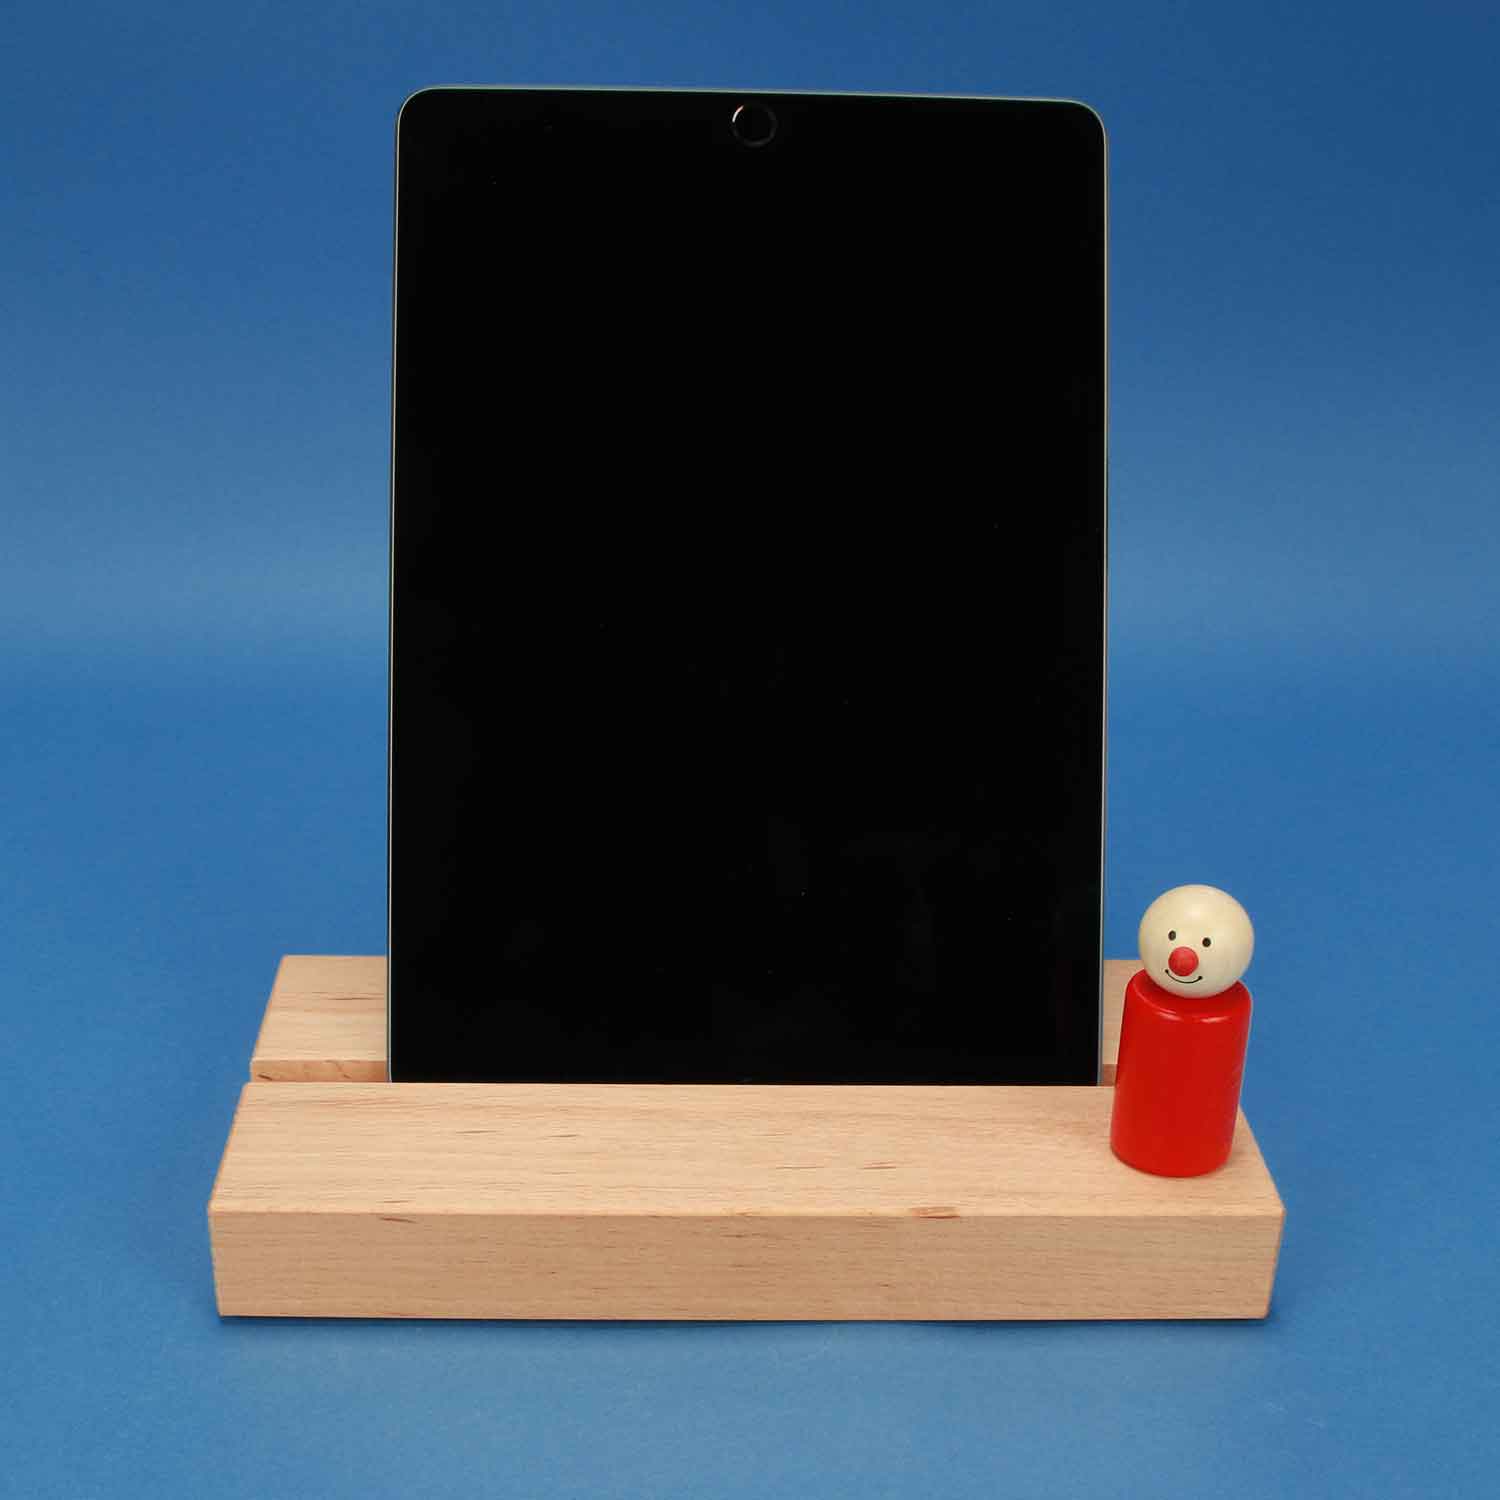 Houder voor iPad of tablet | Houten blokken en taal | Lesmateriaal van hout Leren met houten blokken | houten-speelgoed-blokken.nl